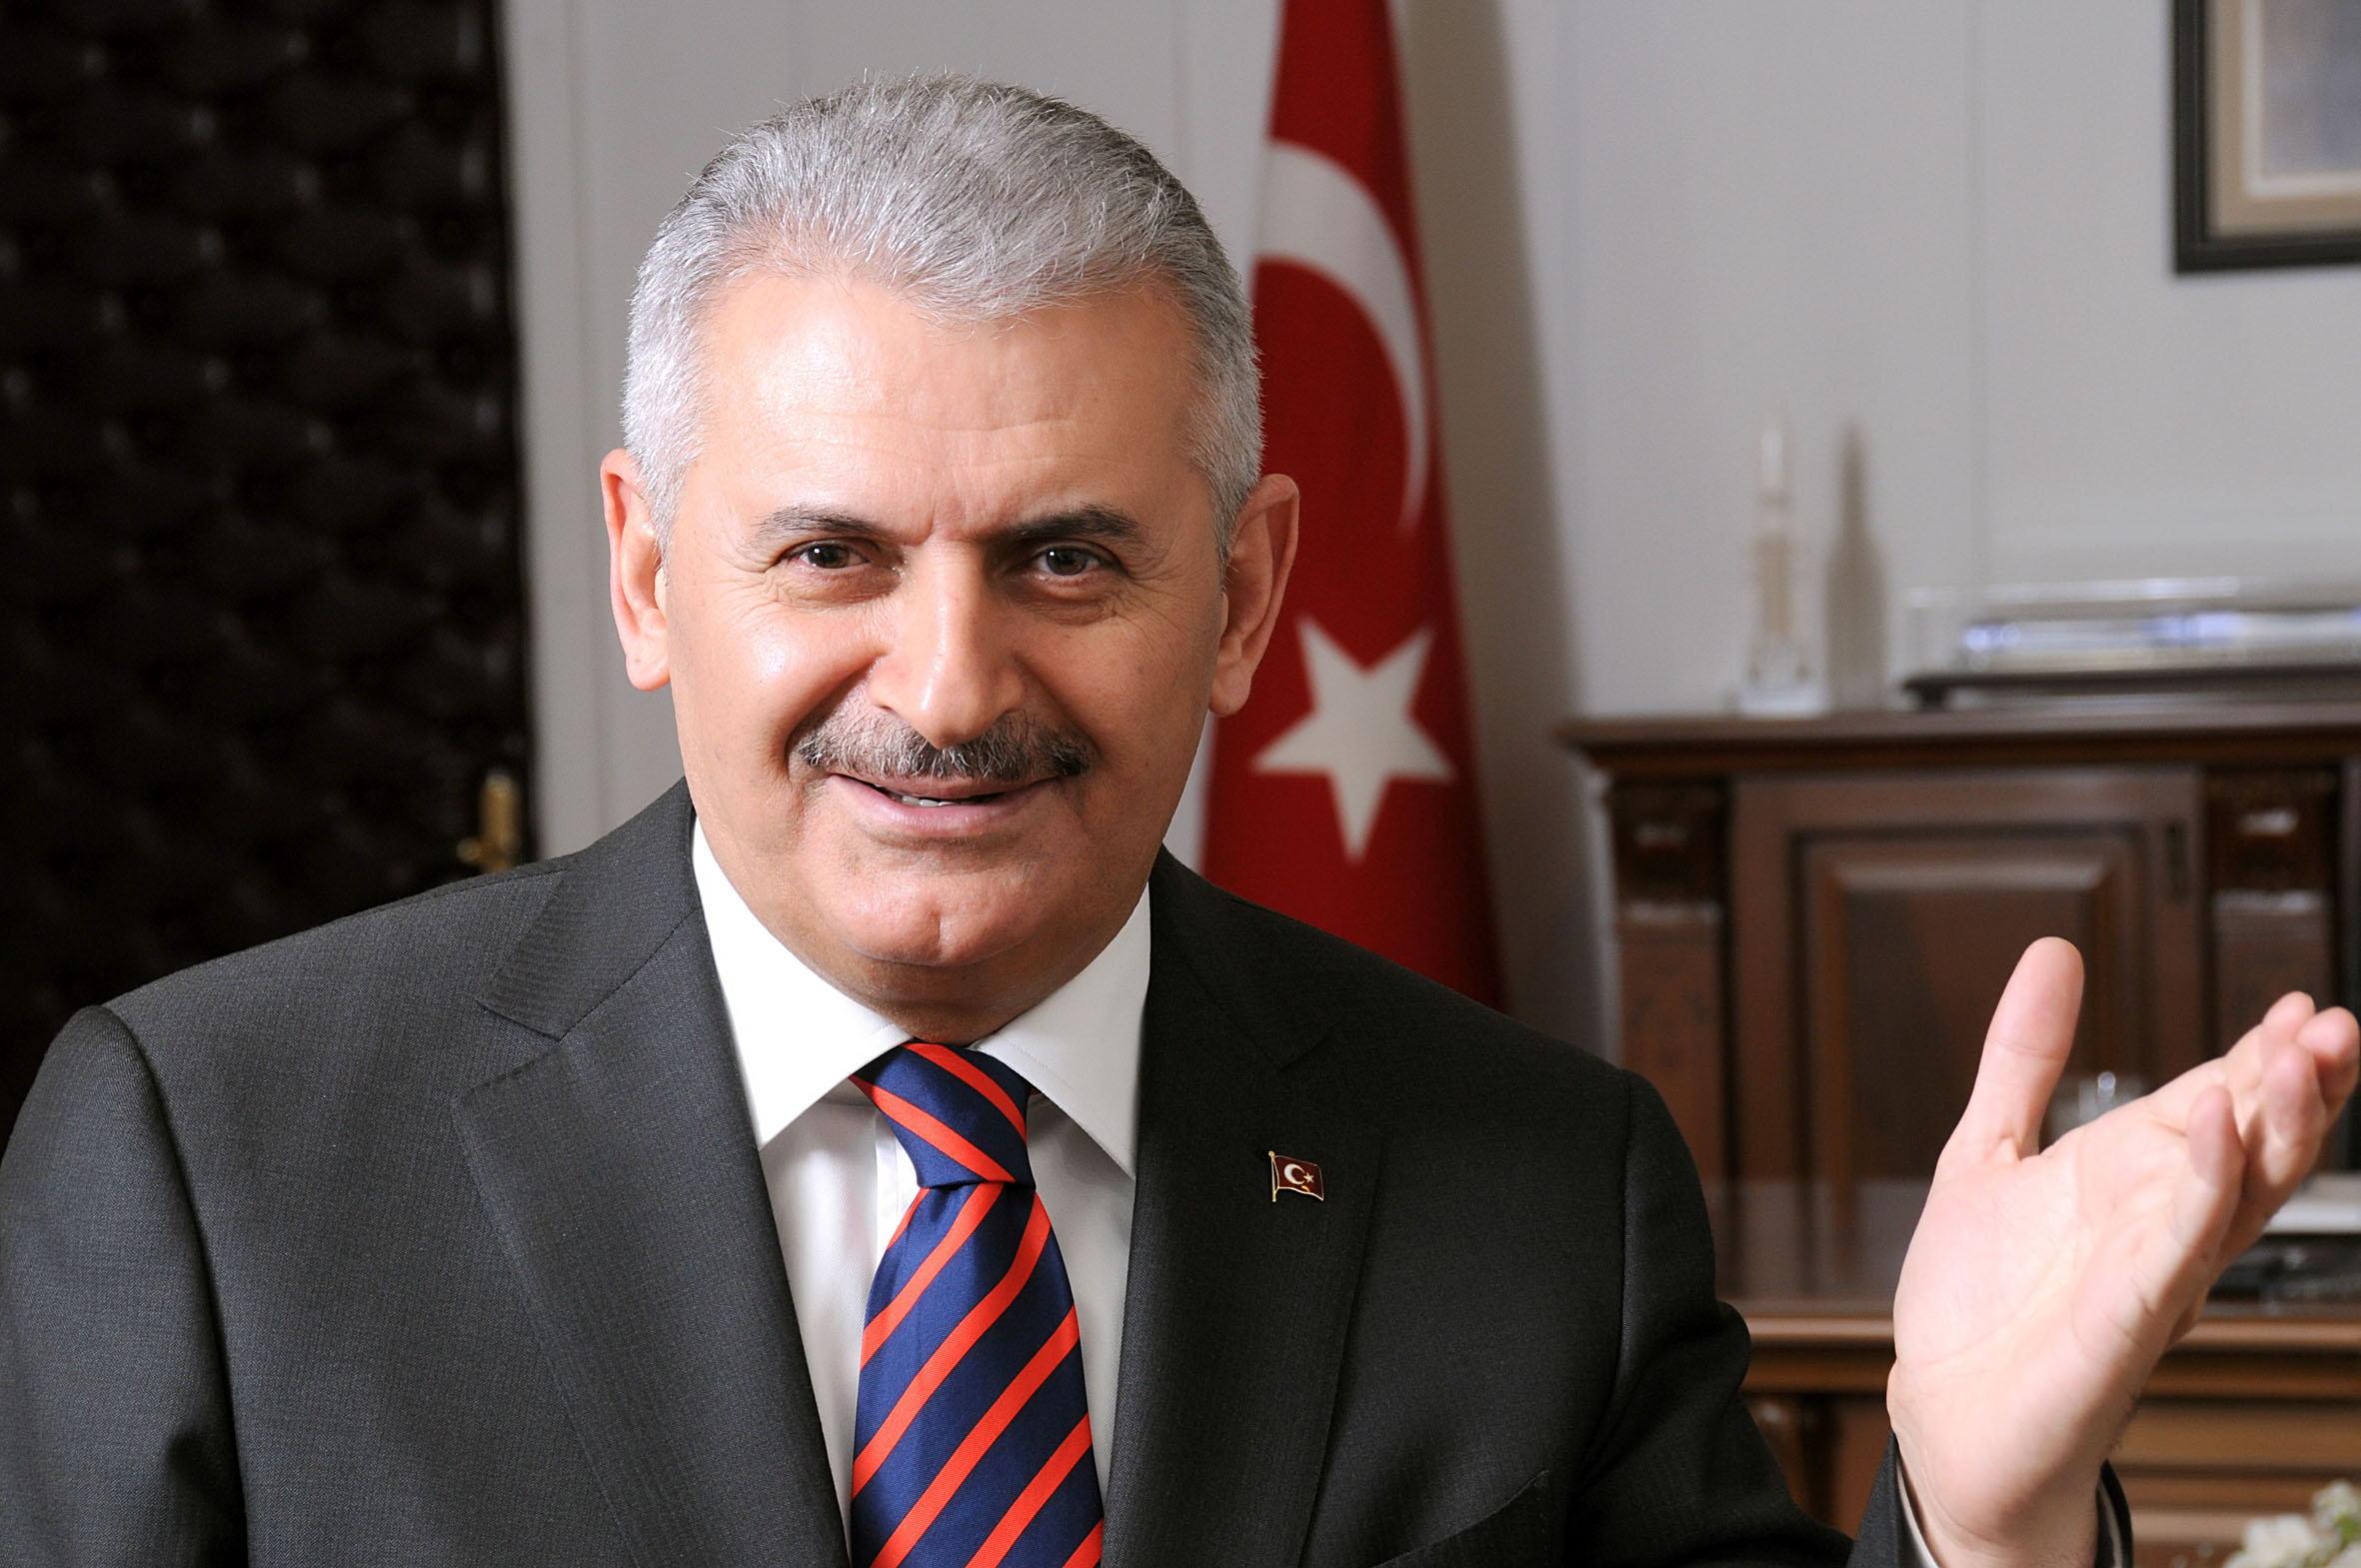 Új török miniszterelnök: az EU-nak tisztáznia kell álláspontját Törökország uniós tagságával kapcsolatban